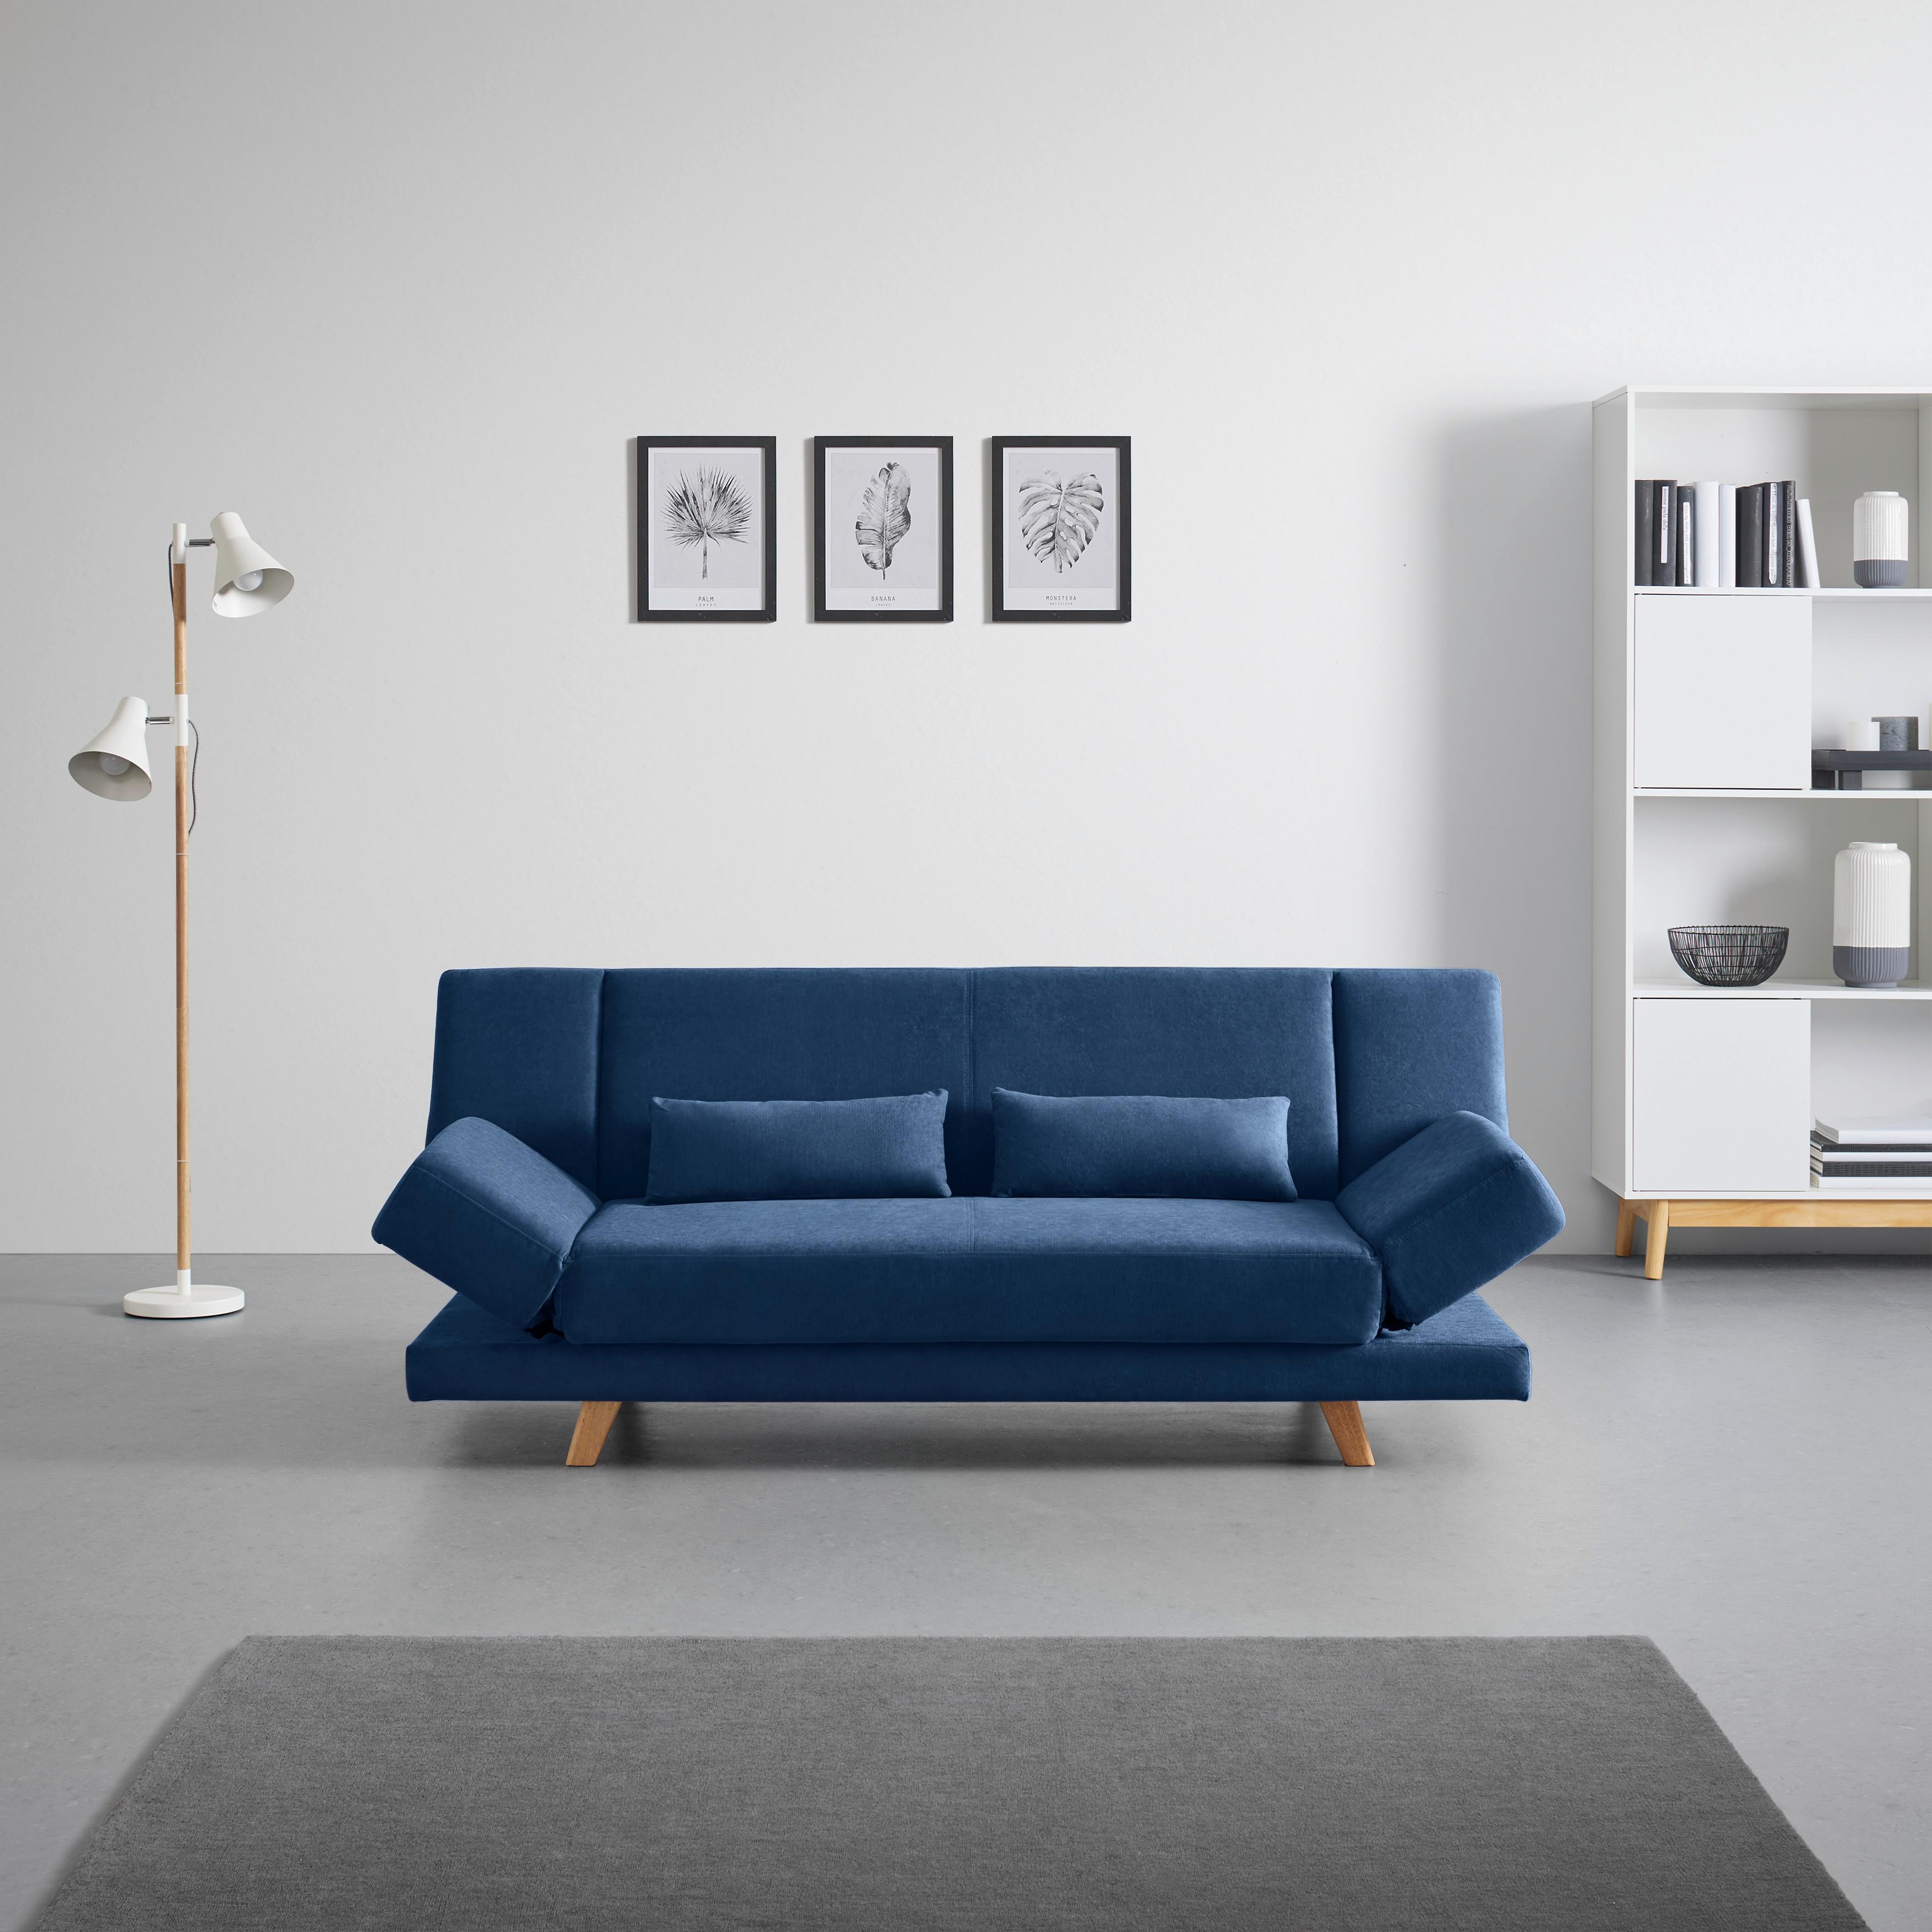 Zofa S Posteljno Funkcijo Funky - naravna/modra, Moderno, tekstil/les (183/73/79cm) - Bessagi Home